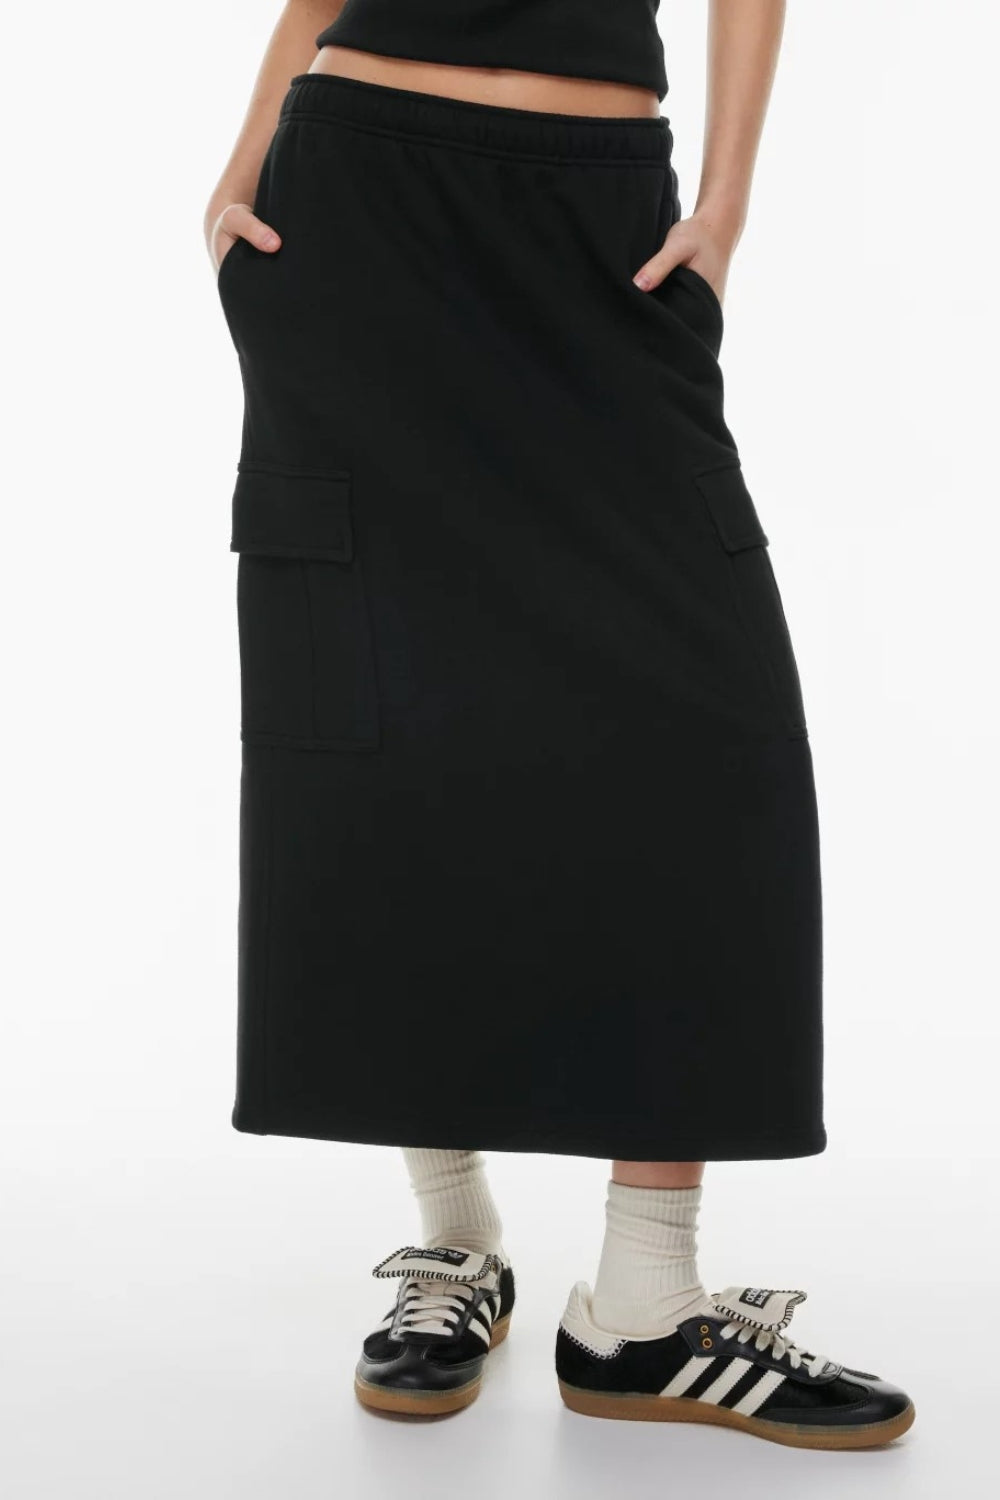 Gossamer black skirt